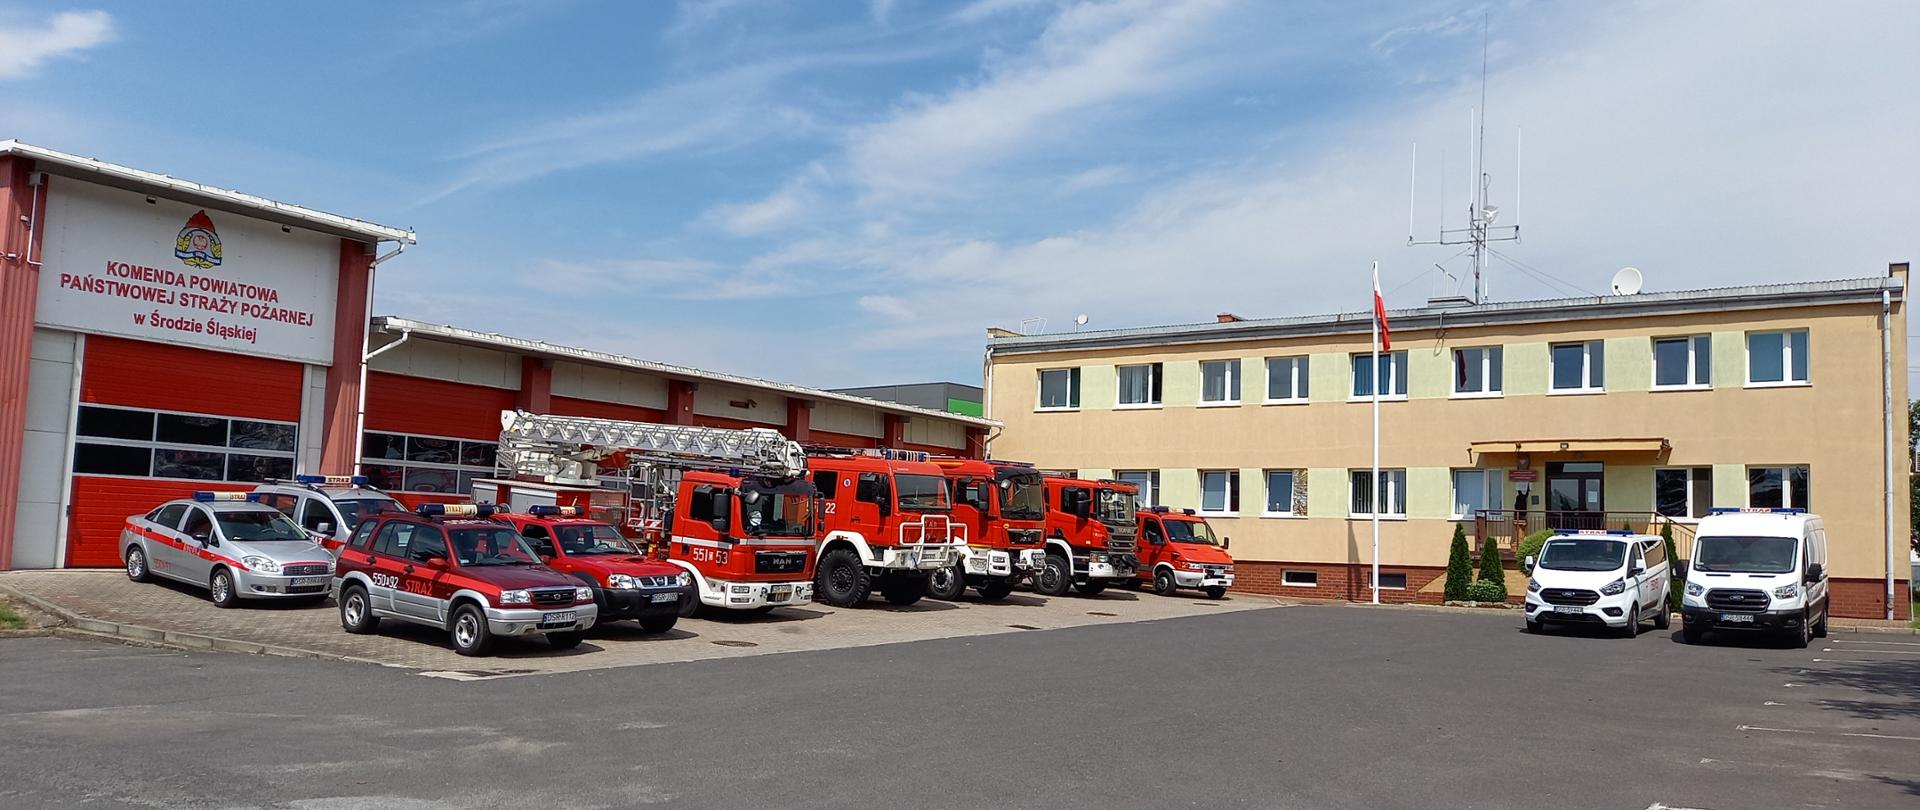 Widok placu przed garażami jednostki ratowniczo - gaśniczej oraz samochodów pożarniczych będących na wyposażeniu straży pożarnej w Środzie Śląskiej